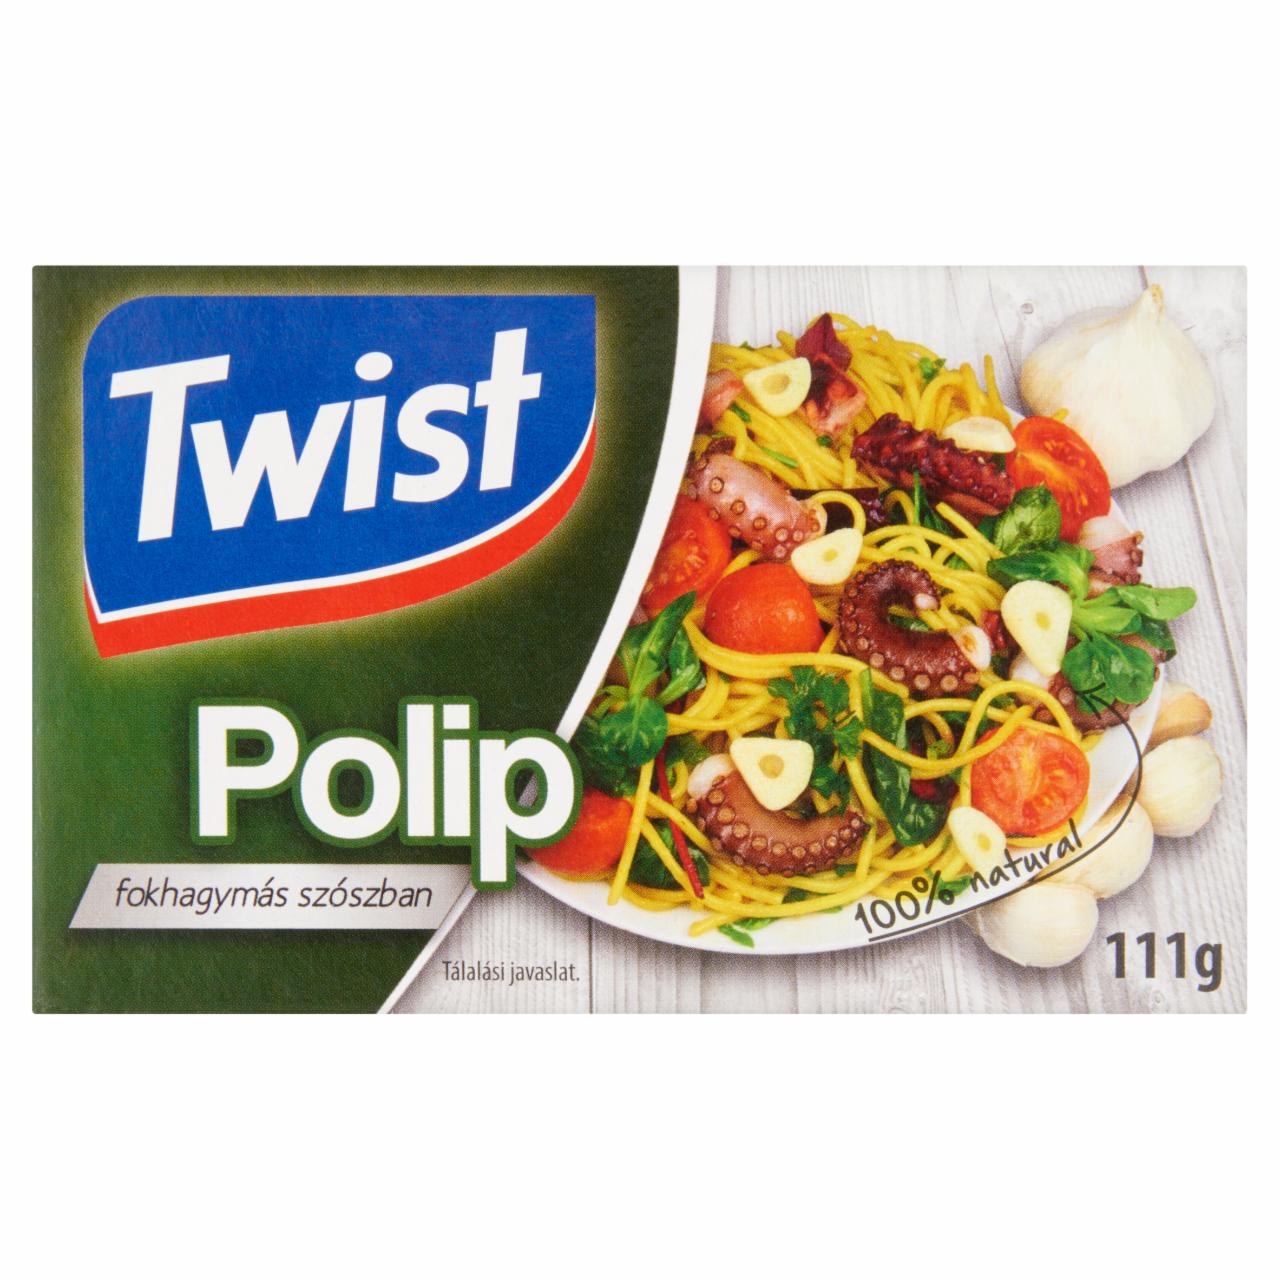 Képek - Twist polip fokhagymás szószban 111 g